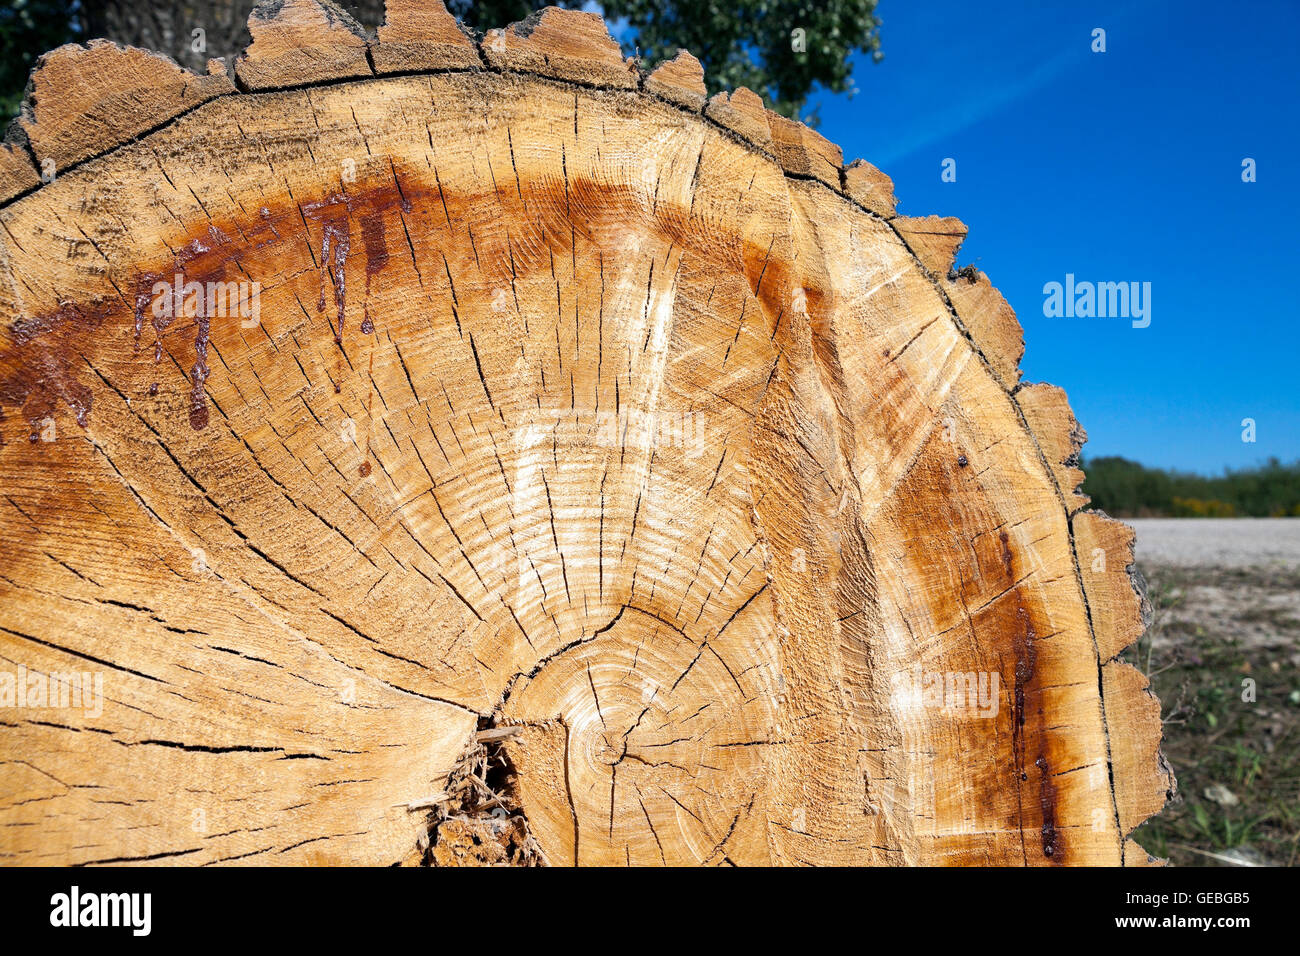 Tagliare un albero, close-up Foto Stock